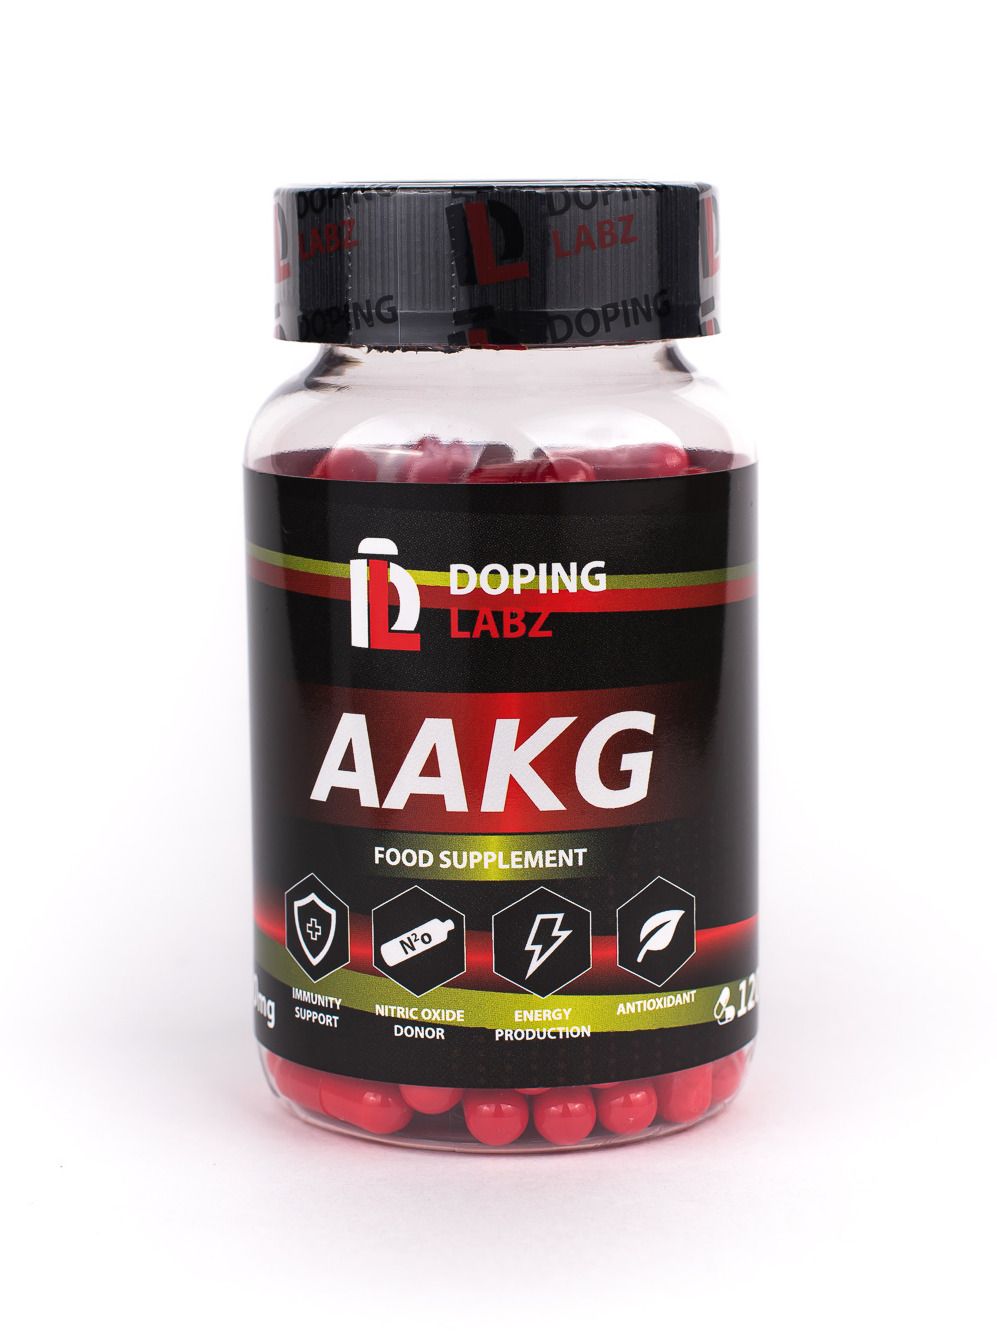 Аргинин альфа кетоглутарат. Аргинин Альфа-кетоглутарат (AAKG). AAKG спортивное питание. Аминокислотный комплекс Академия-т VINITRO L-Arginin+Vinitrox. AAKG 2 1 это допинг ?.